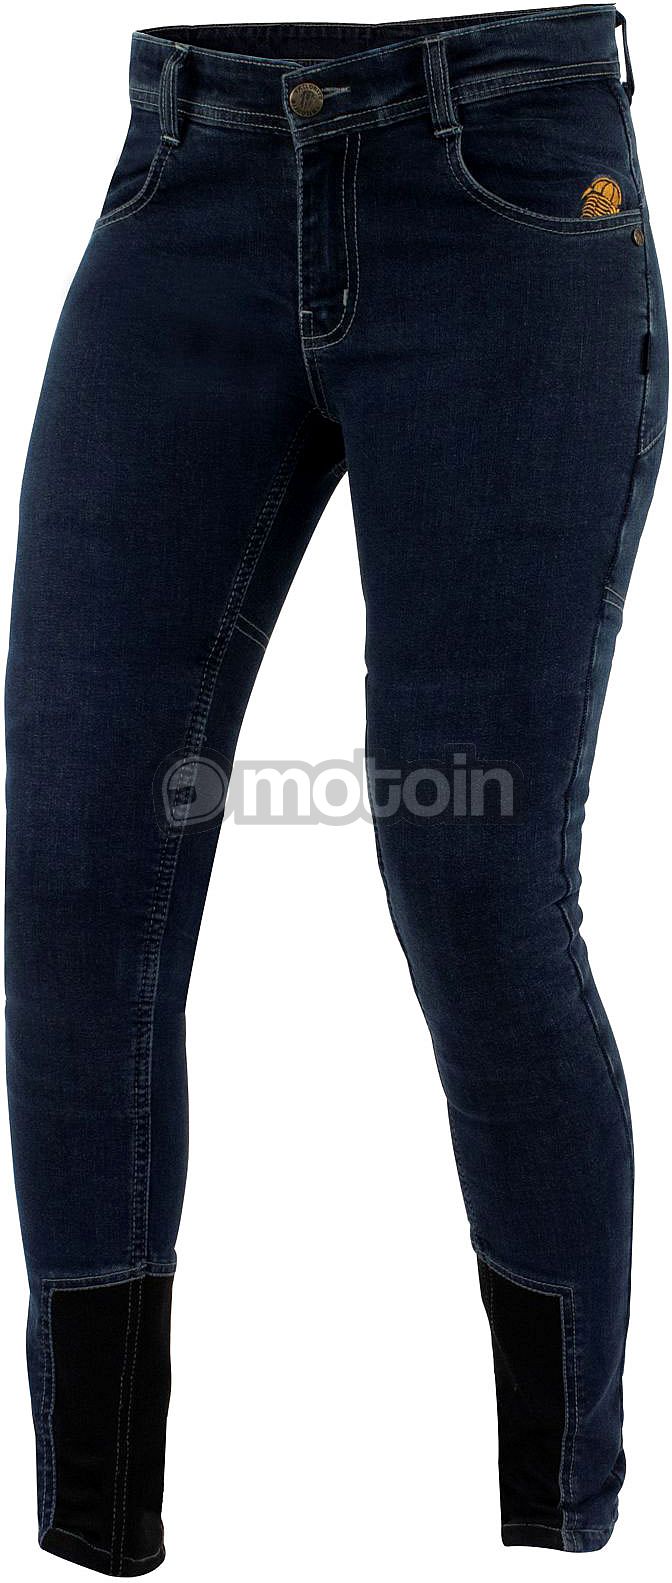 Trilobite All Shape, jeans ousados mulheres em forma